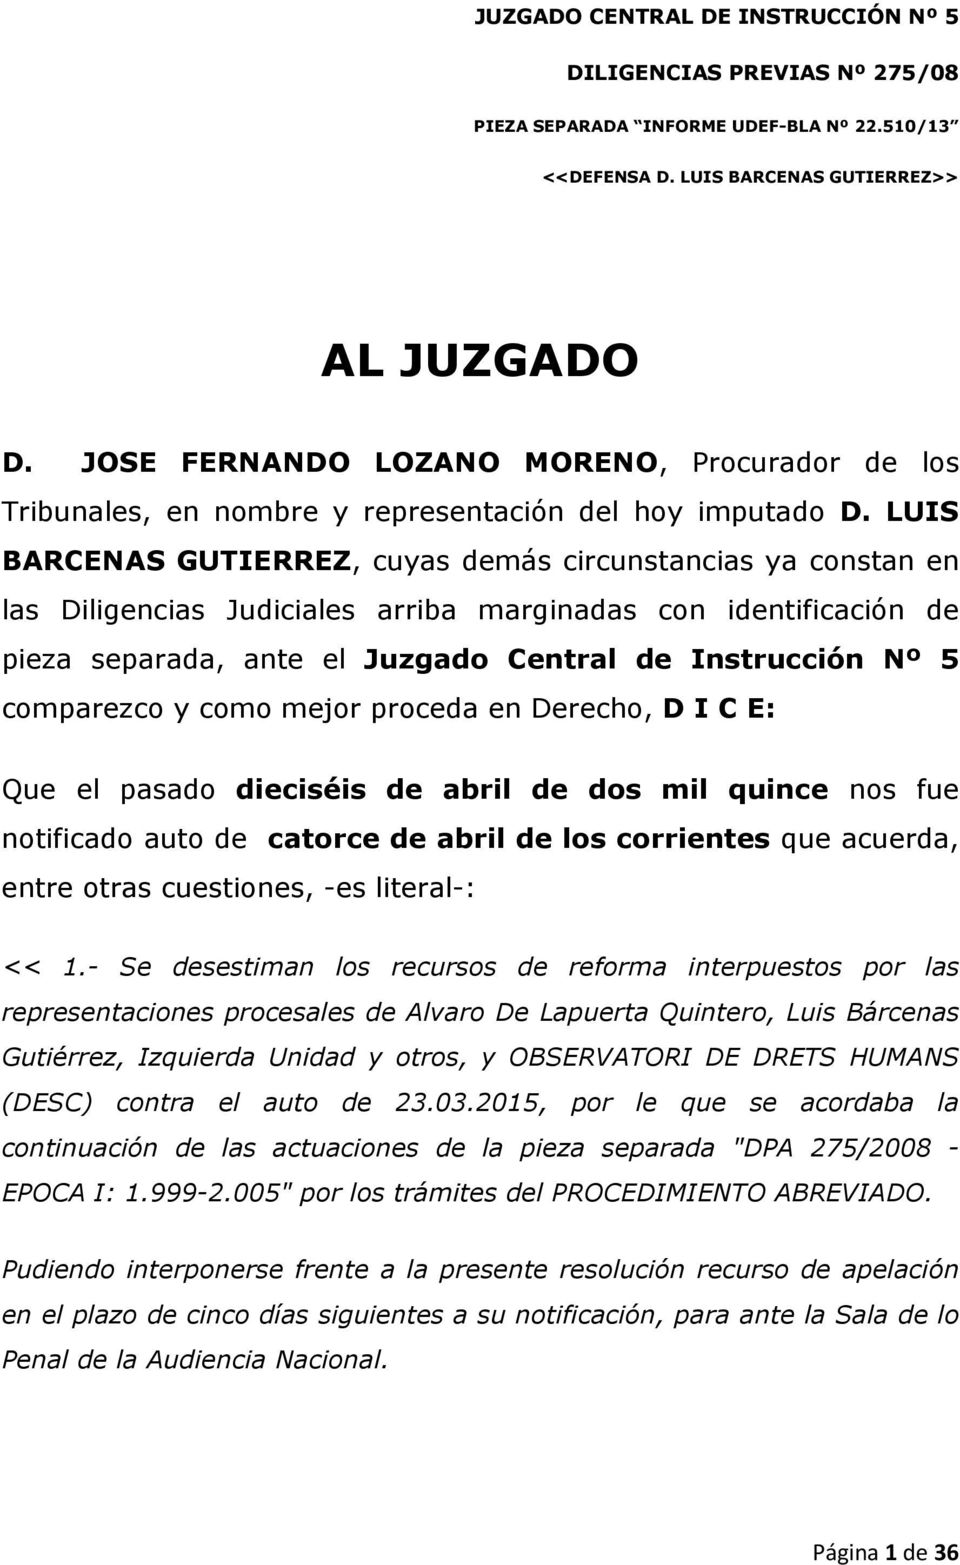 LUIS BARCENAS GUTIERREZ, cuyas demás circunstancias ya constan en las Diligencias Judiciales arriba marginadas con identificación de pieza separada, ante el Juzgado Central de Instrucción Nº 5